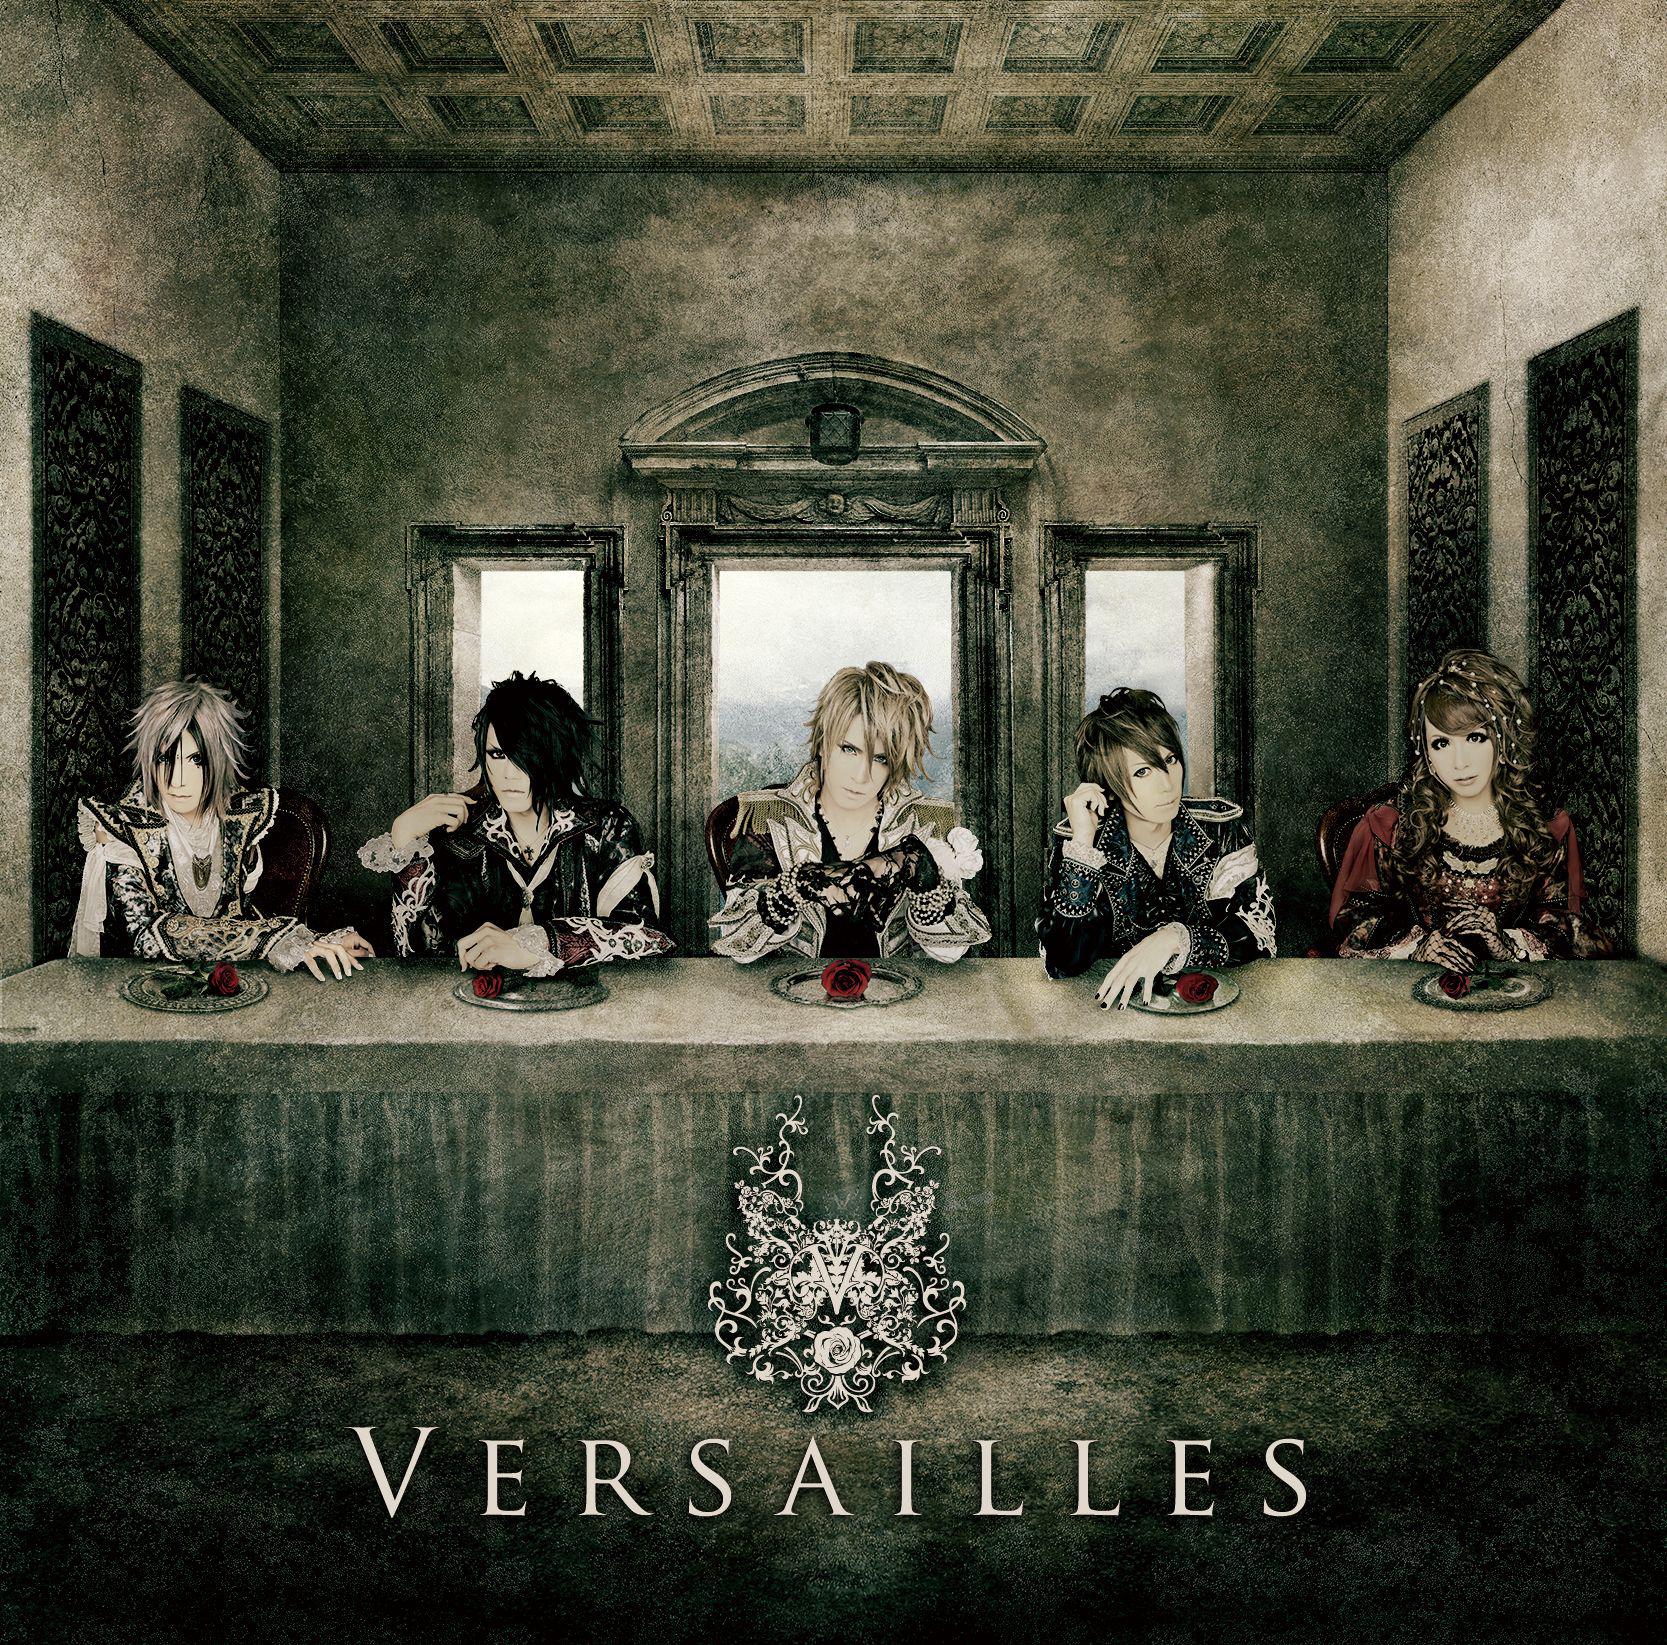 Versailles - ROSE